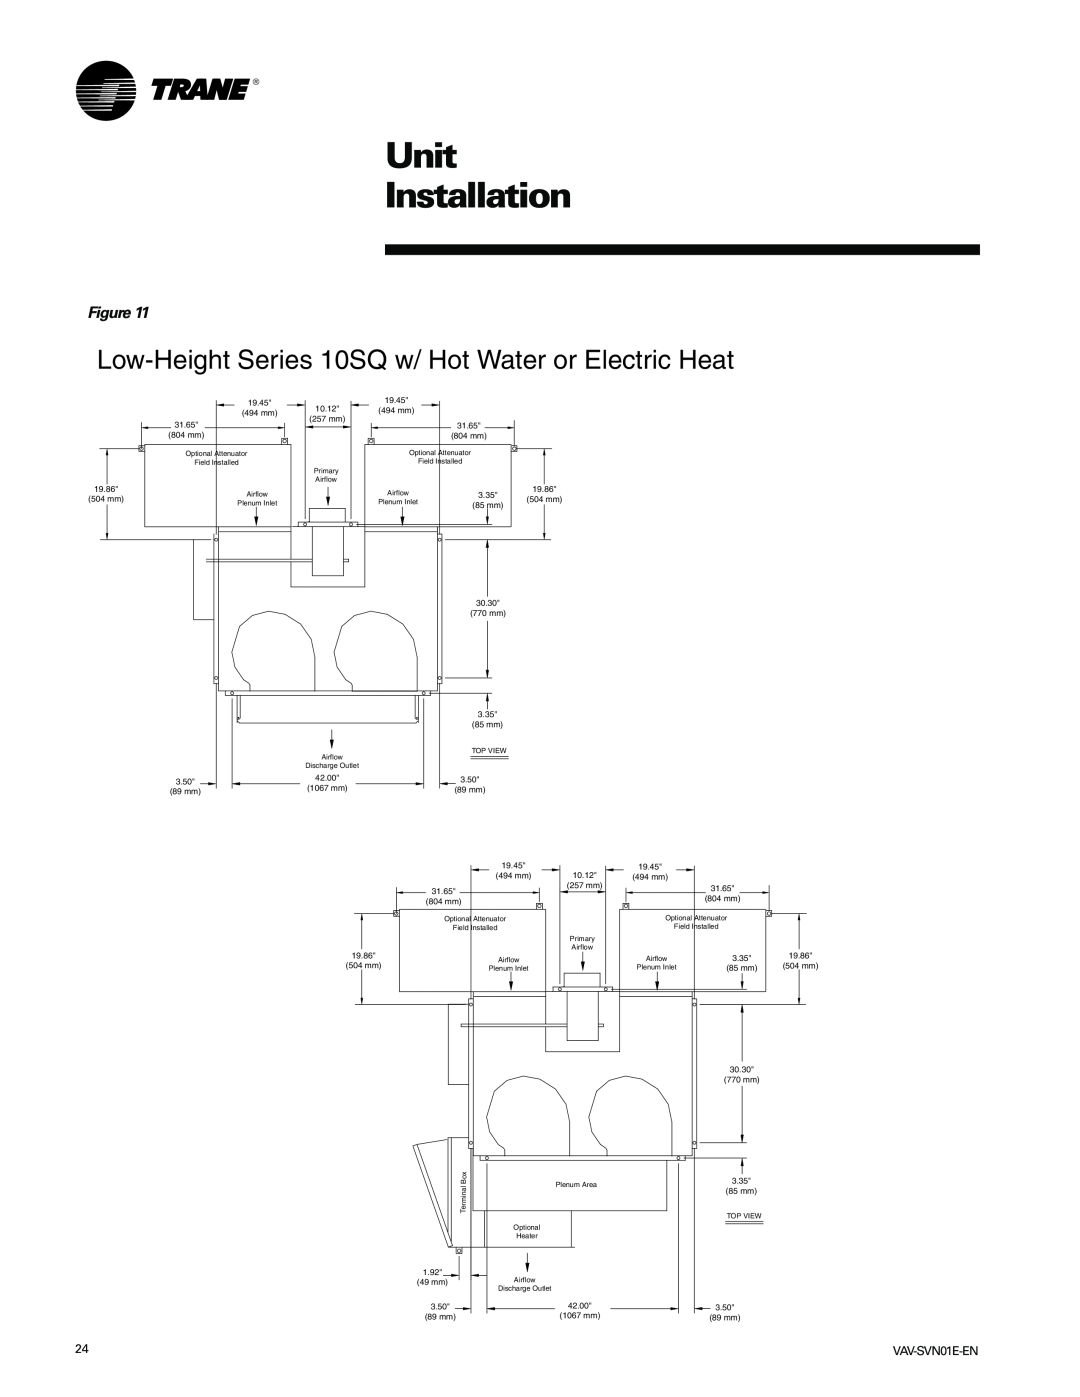 Trane VAV-SVN01E-EN, Trane manual Unit Installation, 19.45 